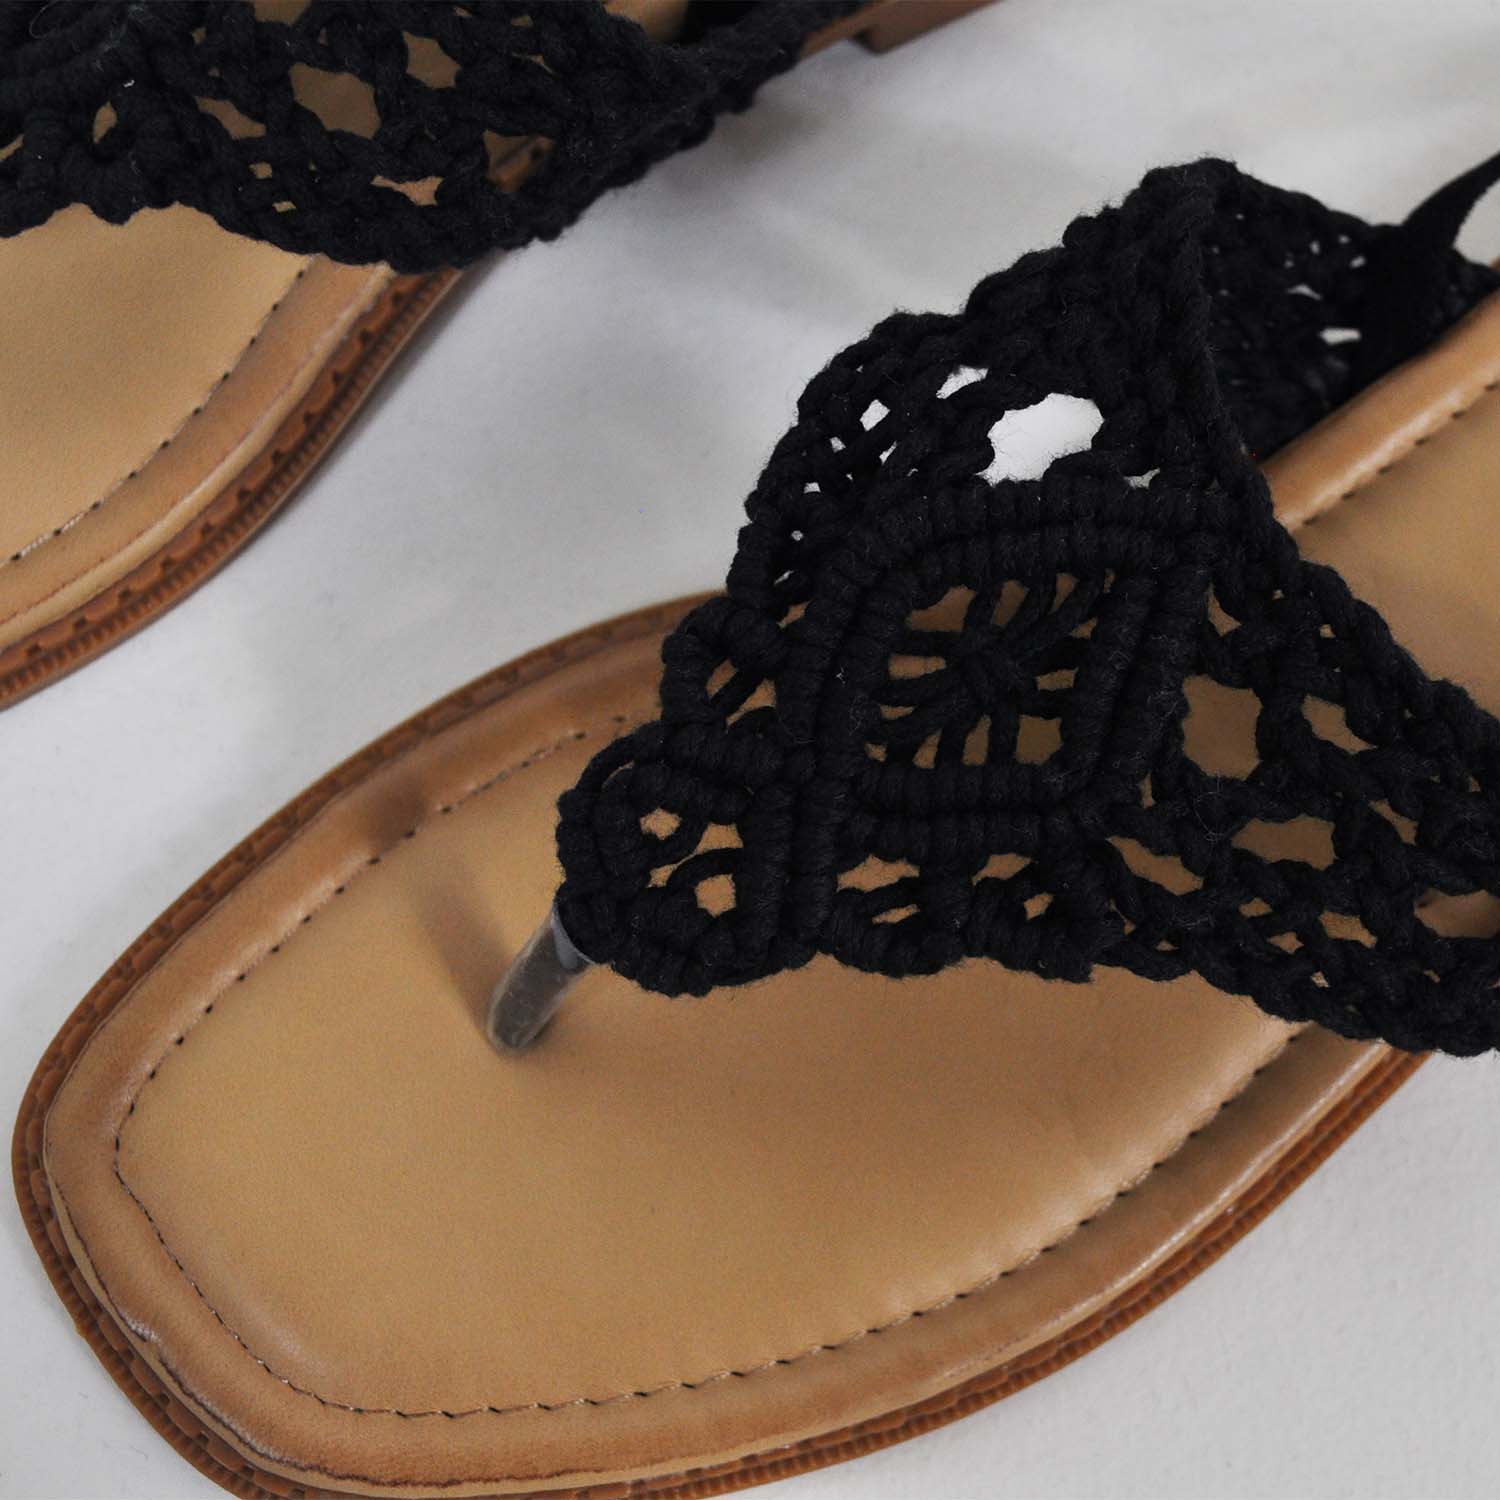 Sandale au crochet noir